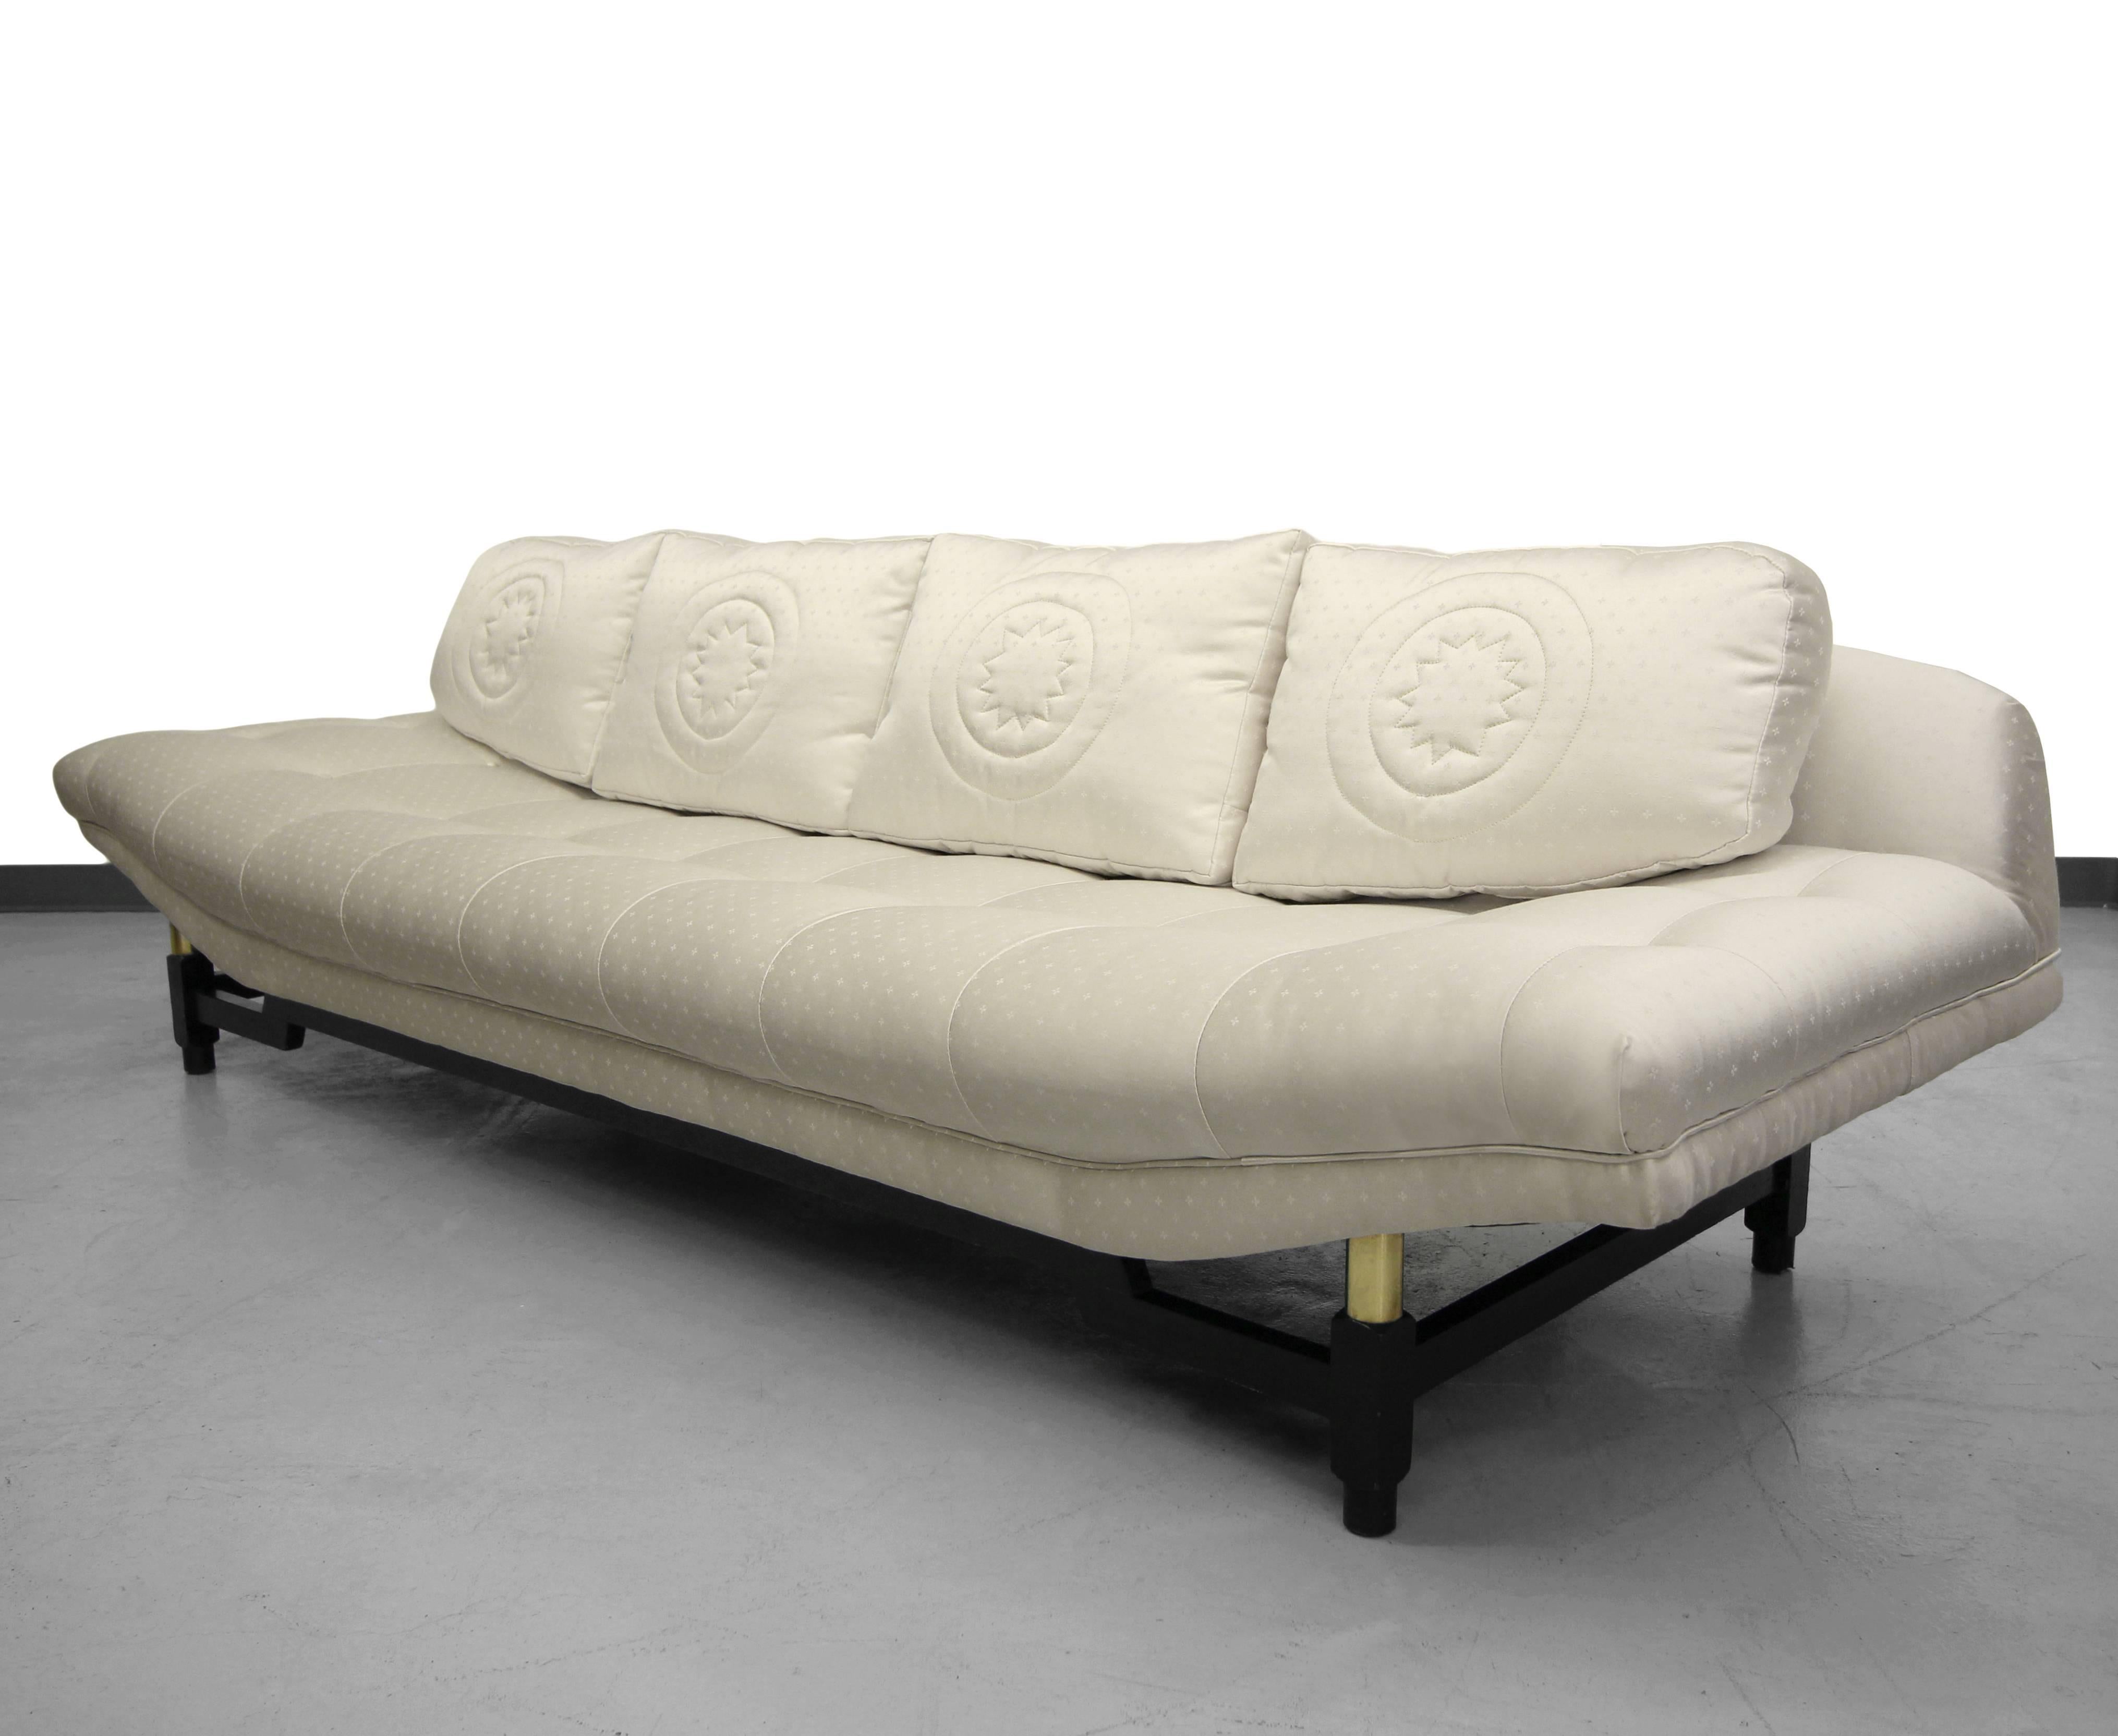 Canapé Gondola du milieu du siècle par Baker Furniture.  Le canapé a des lignes très épurées avec une touche asiatique. Ce magnifique canapé ne ressemble à aucun autre canapé de gondole. 

La base est en bois tubulaire laqué noir avec des détails en